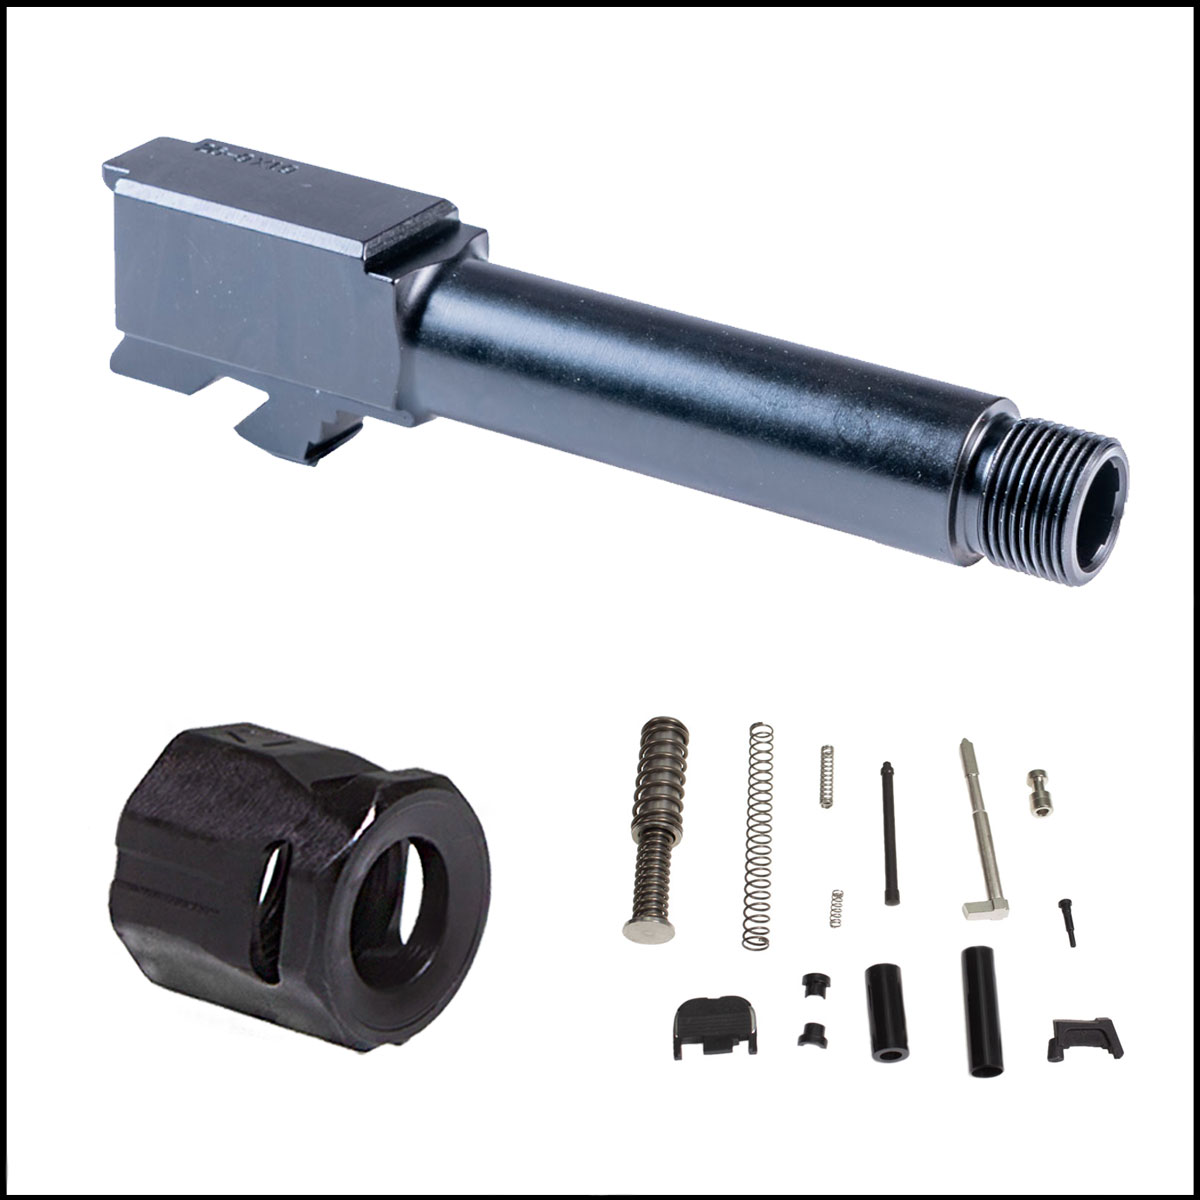 Barrel Bundle: Glock 26 Compatible Threaded Barrel + Strike Industries Barrel Comp + JE Machine Glock 26 Slide Parts Kit